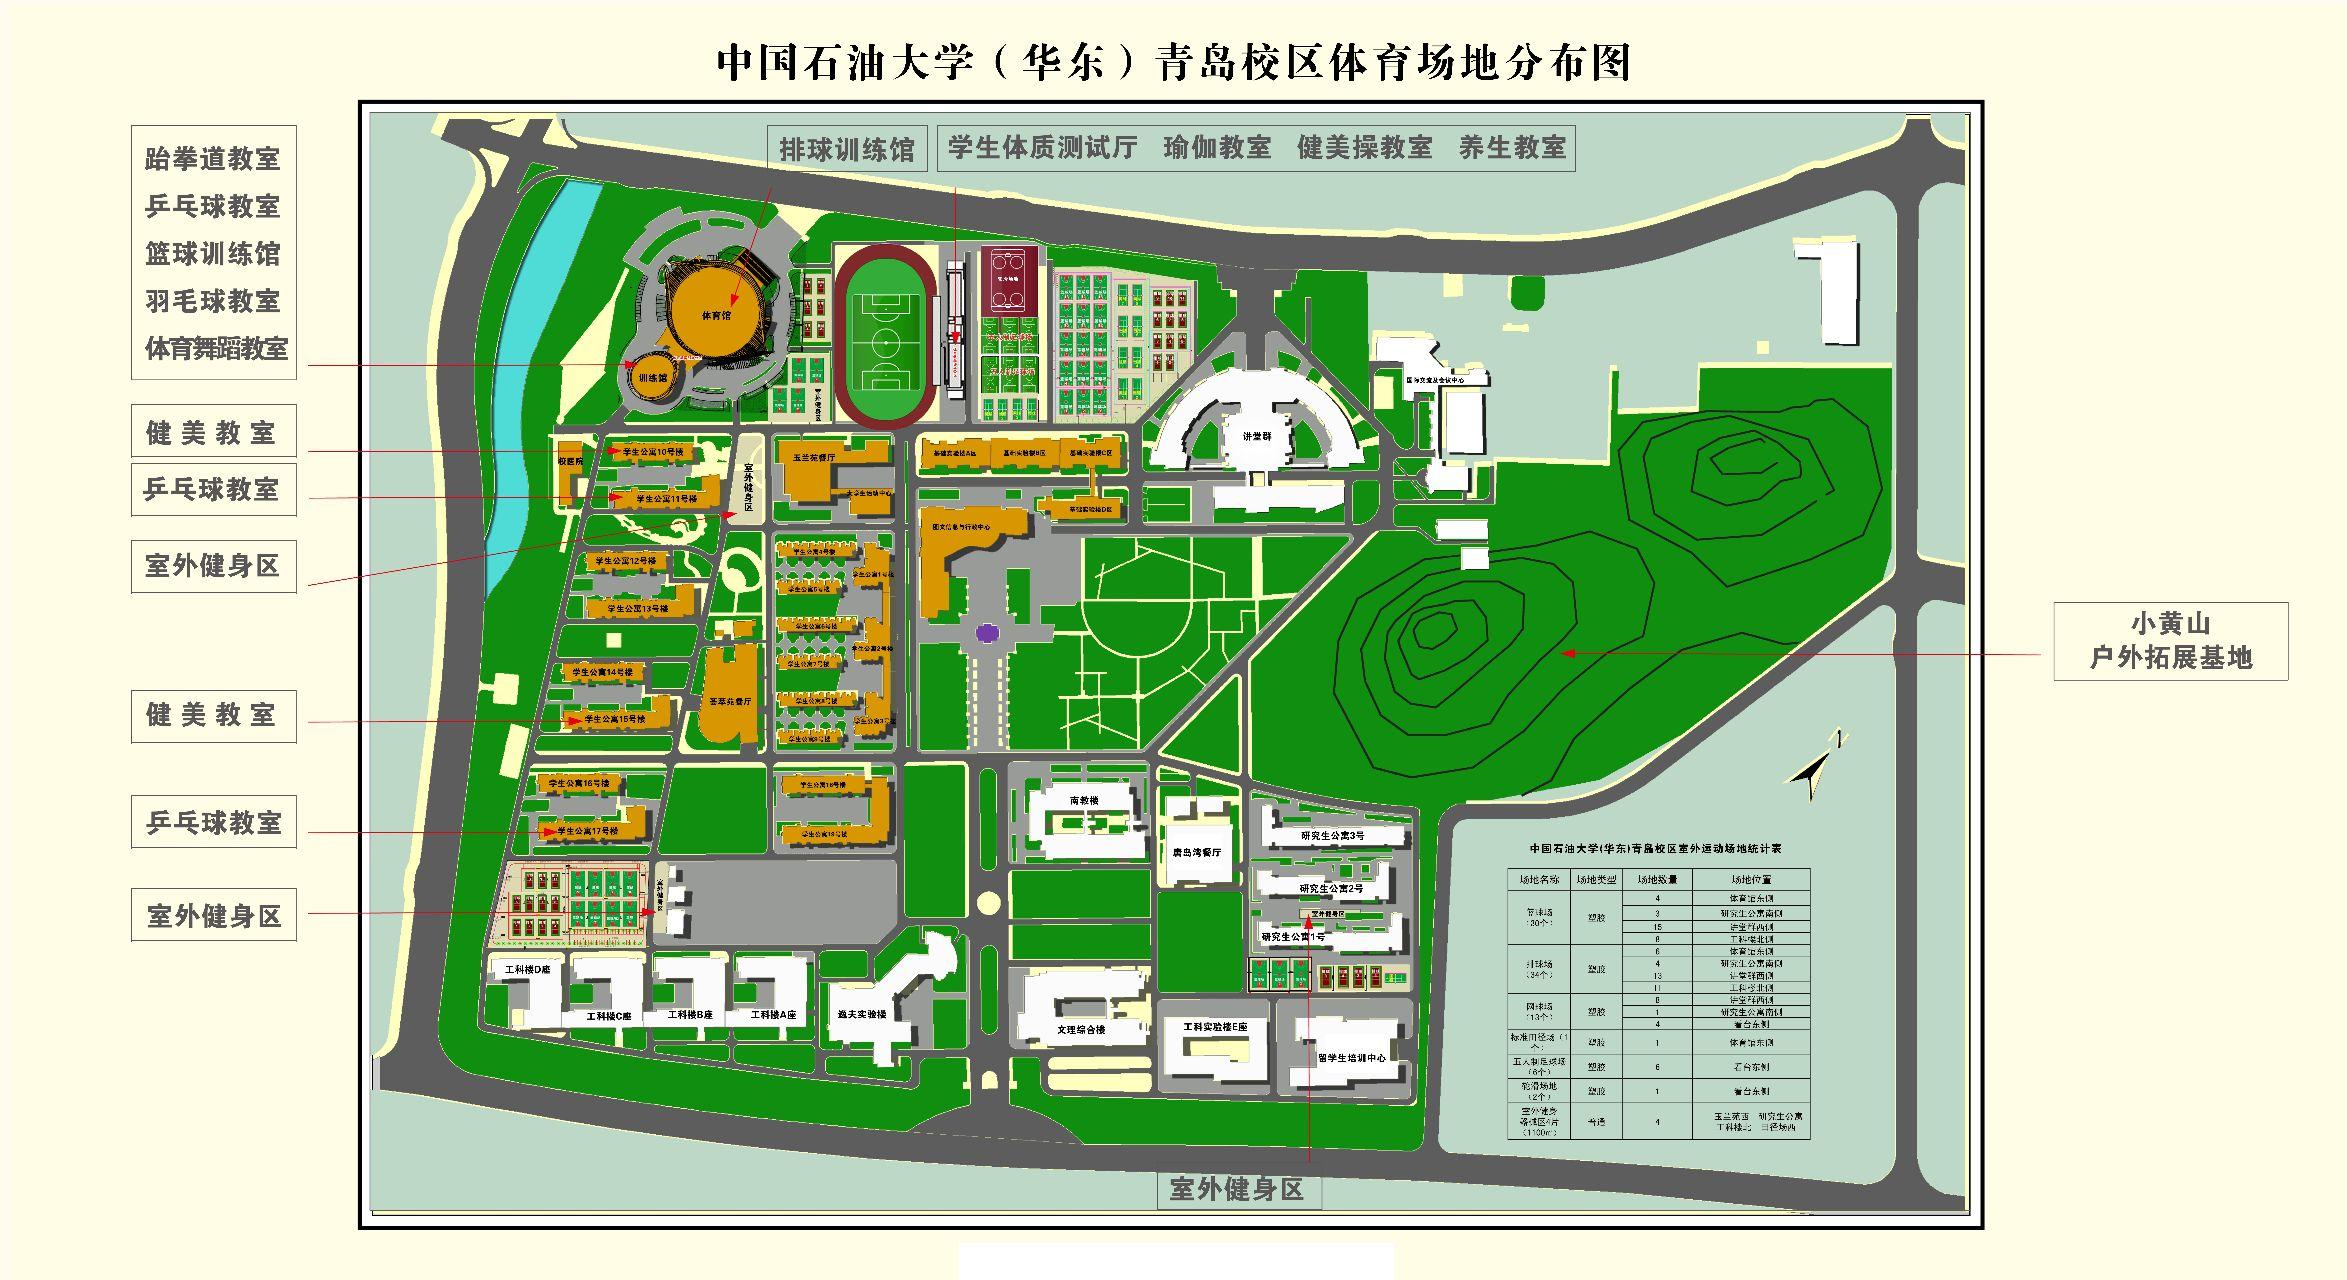 中国石油大学(华东)的体育设施水平如何? 